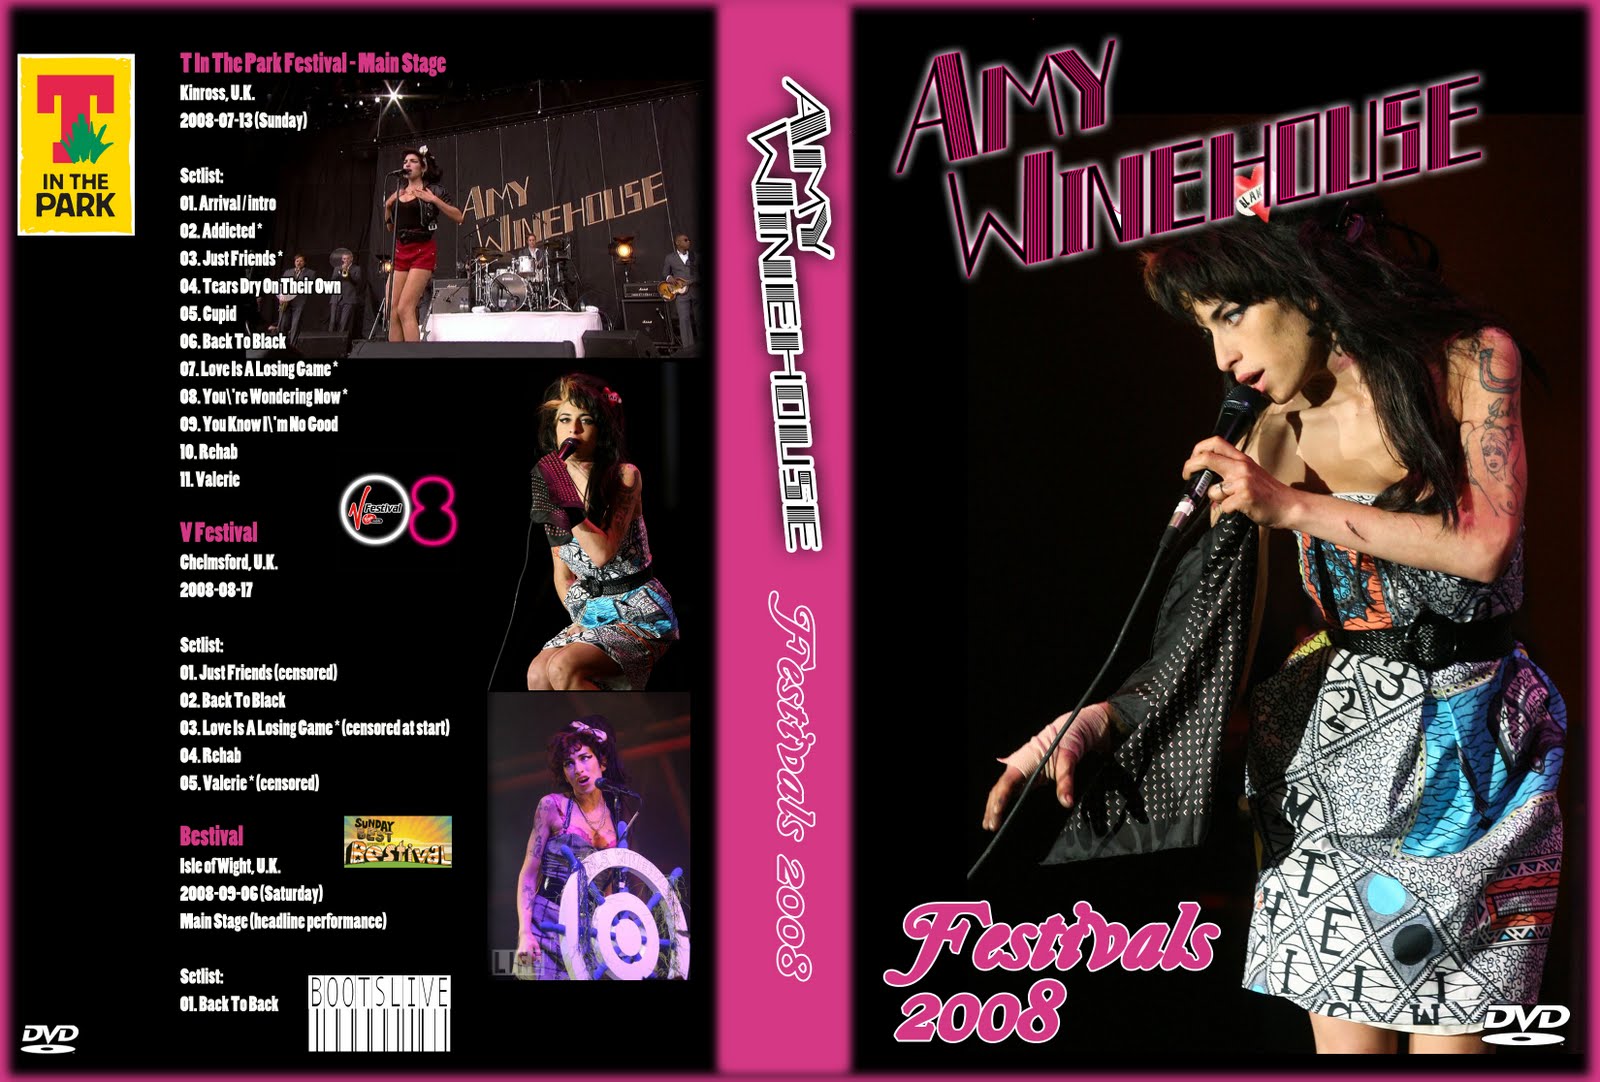 http://4.bp.blogspot.com/-7nqDzMOmYGQ/Tj5njqpBvEI/AAAAAAAAC08/17LgRqLLA08/s1600/Amy-TPark-V-FEst-2008-BOOTSLIVE-DVD.jpg